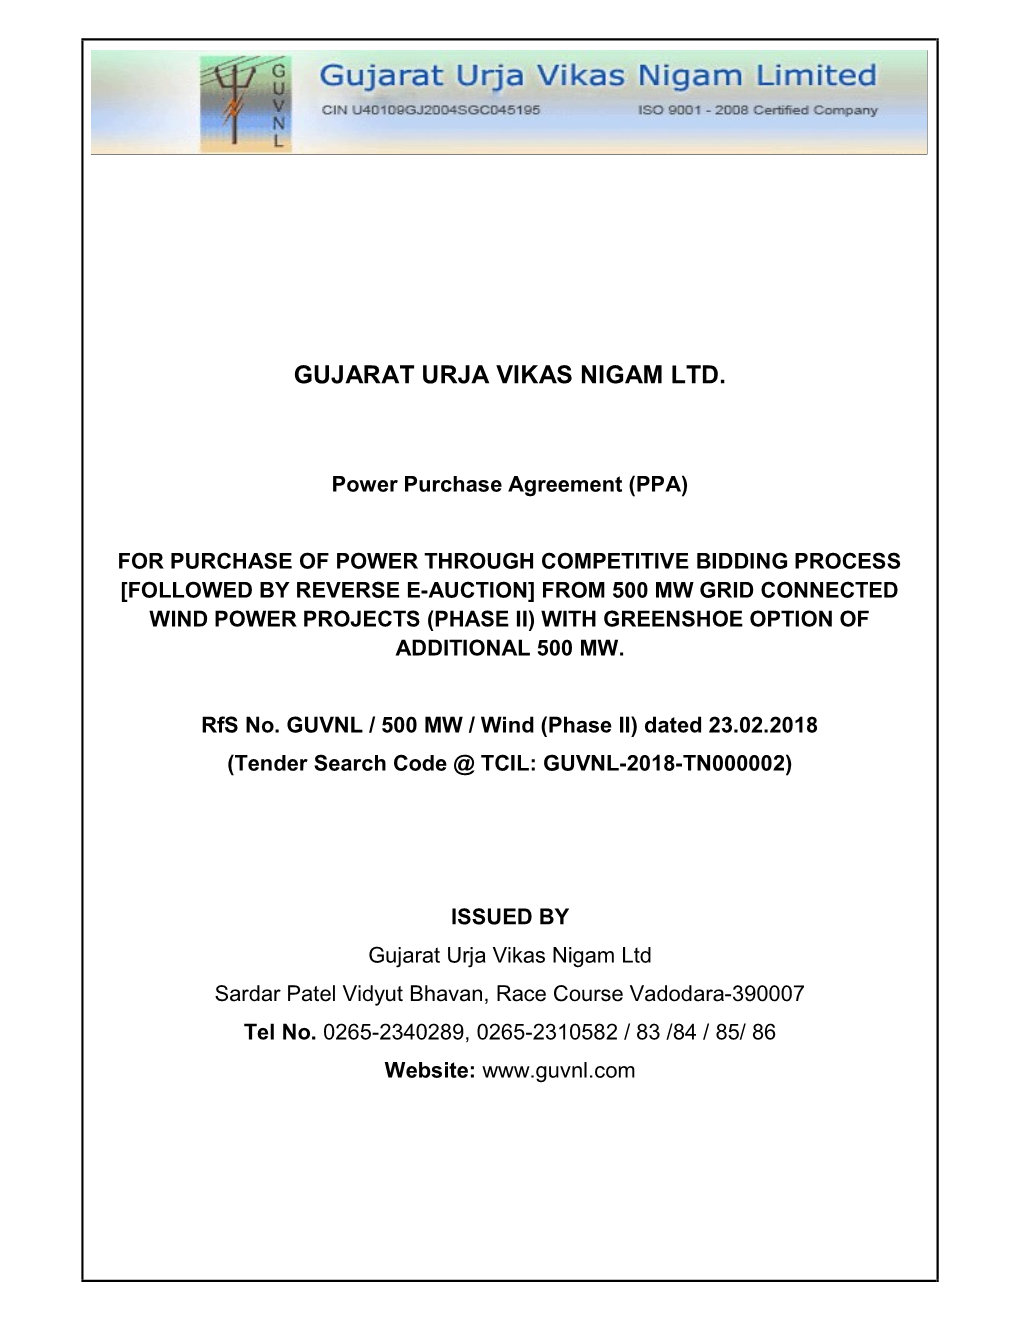 Gujarat Urja Vikas Nigam Ltd